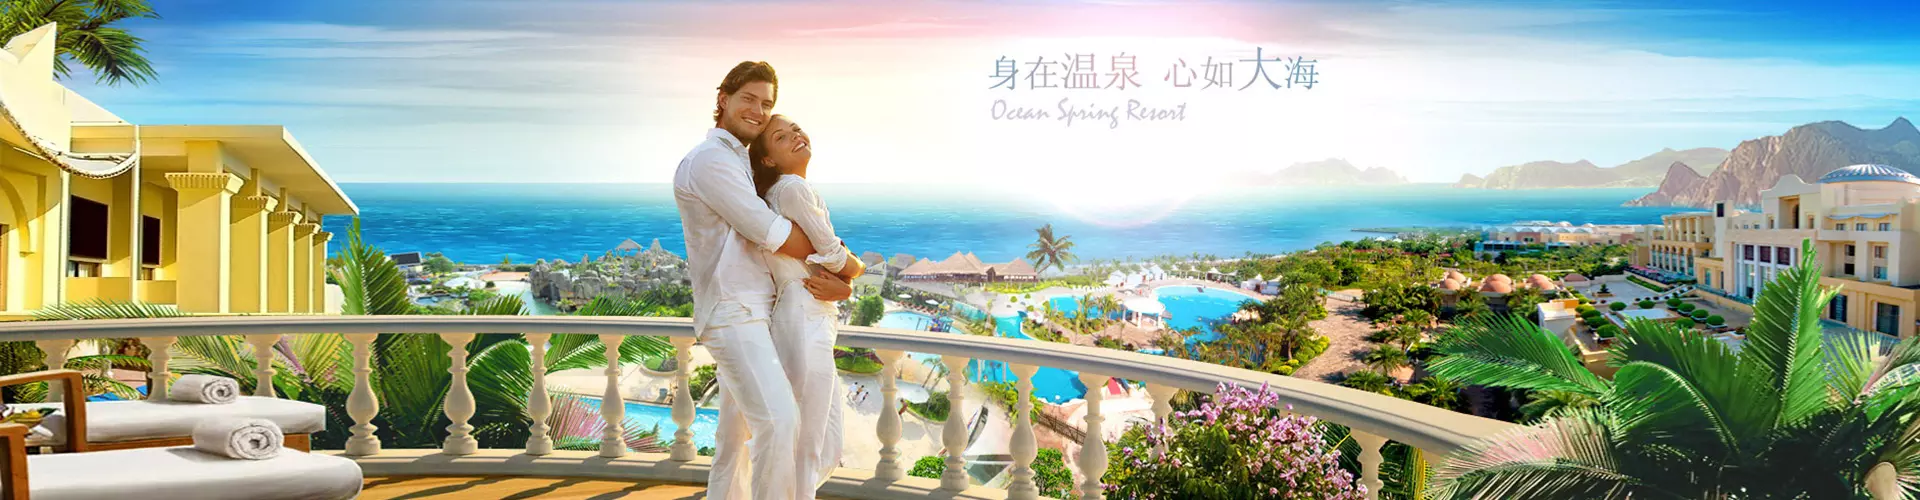 中國短線旅遊 - 珠海海泉灣維景大酒店套票 Zhuhai Ocean Spring Hotel Package